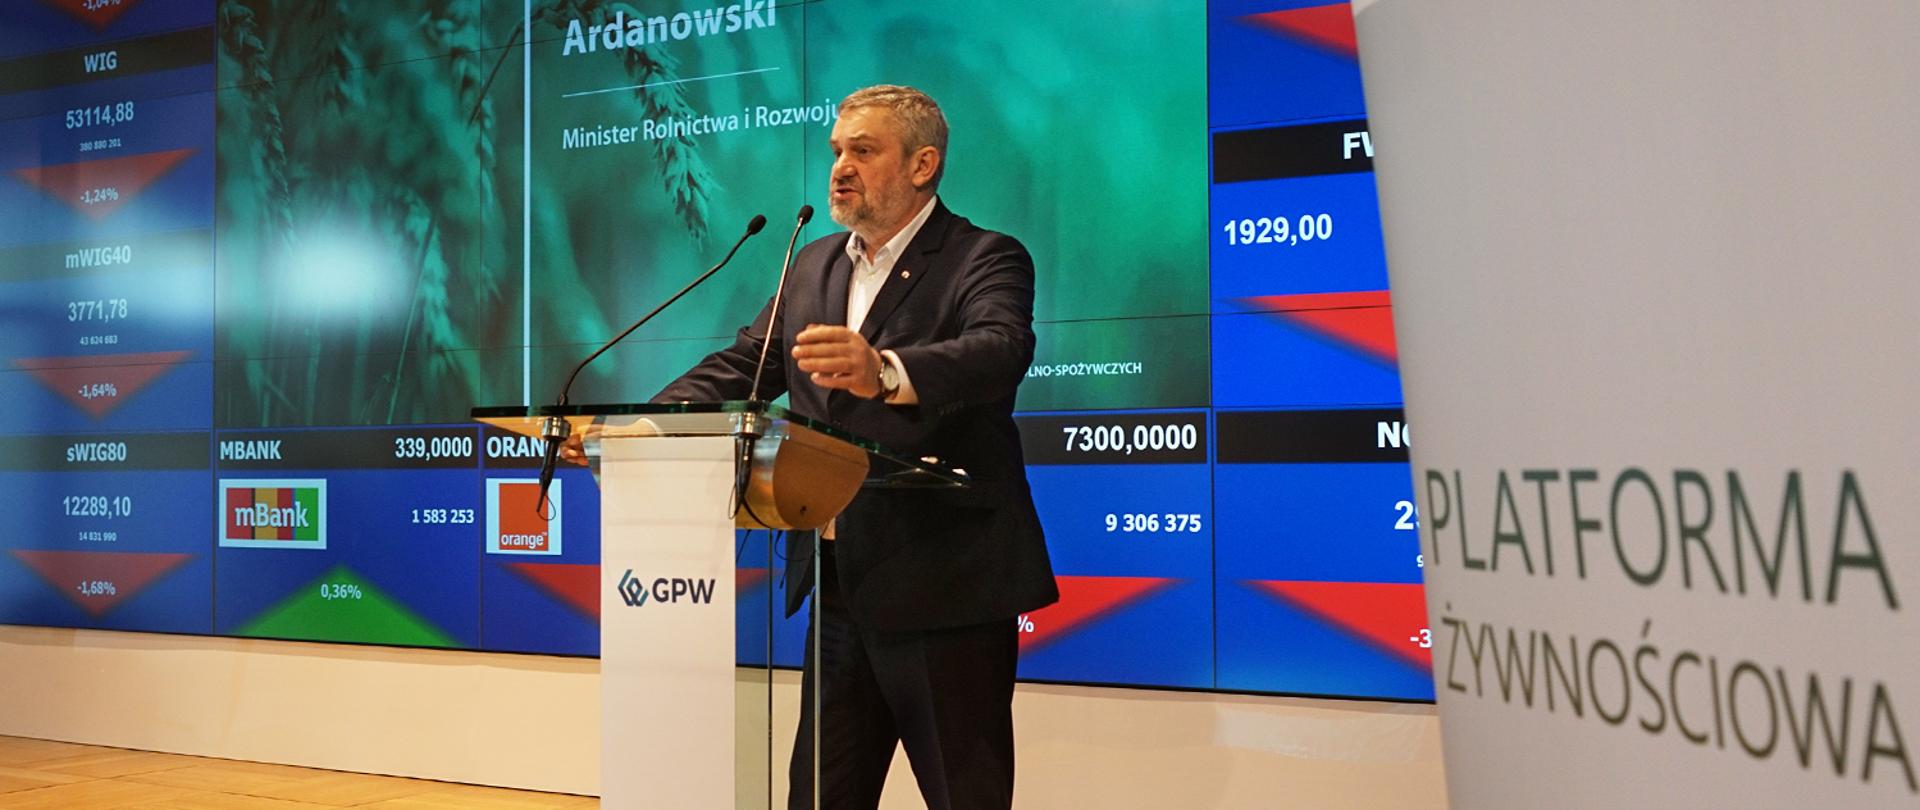 Minister Ardanowski podczas konferencji prasowej